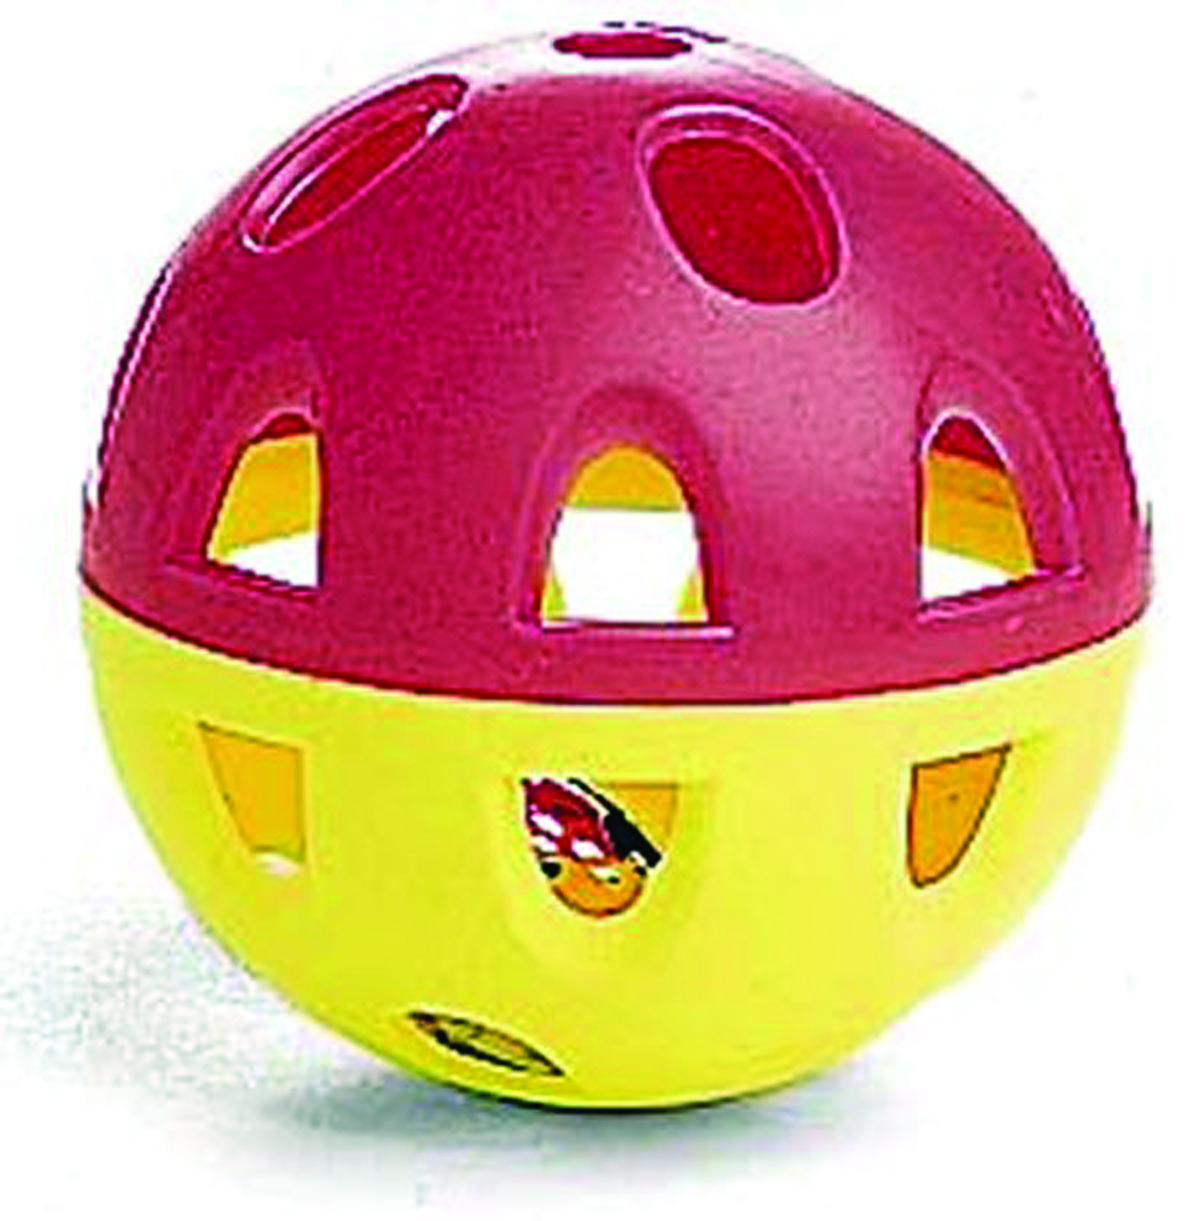 Jumbo Neon Lattice Ball With Bell